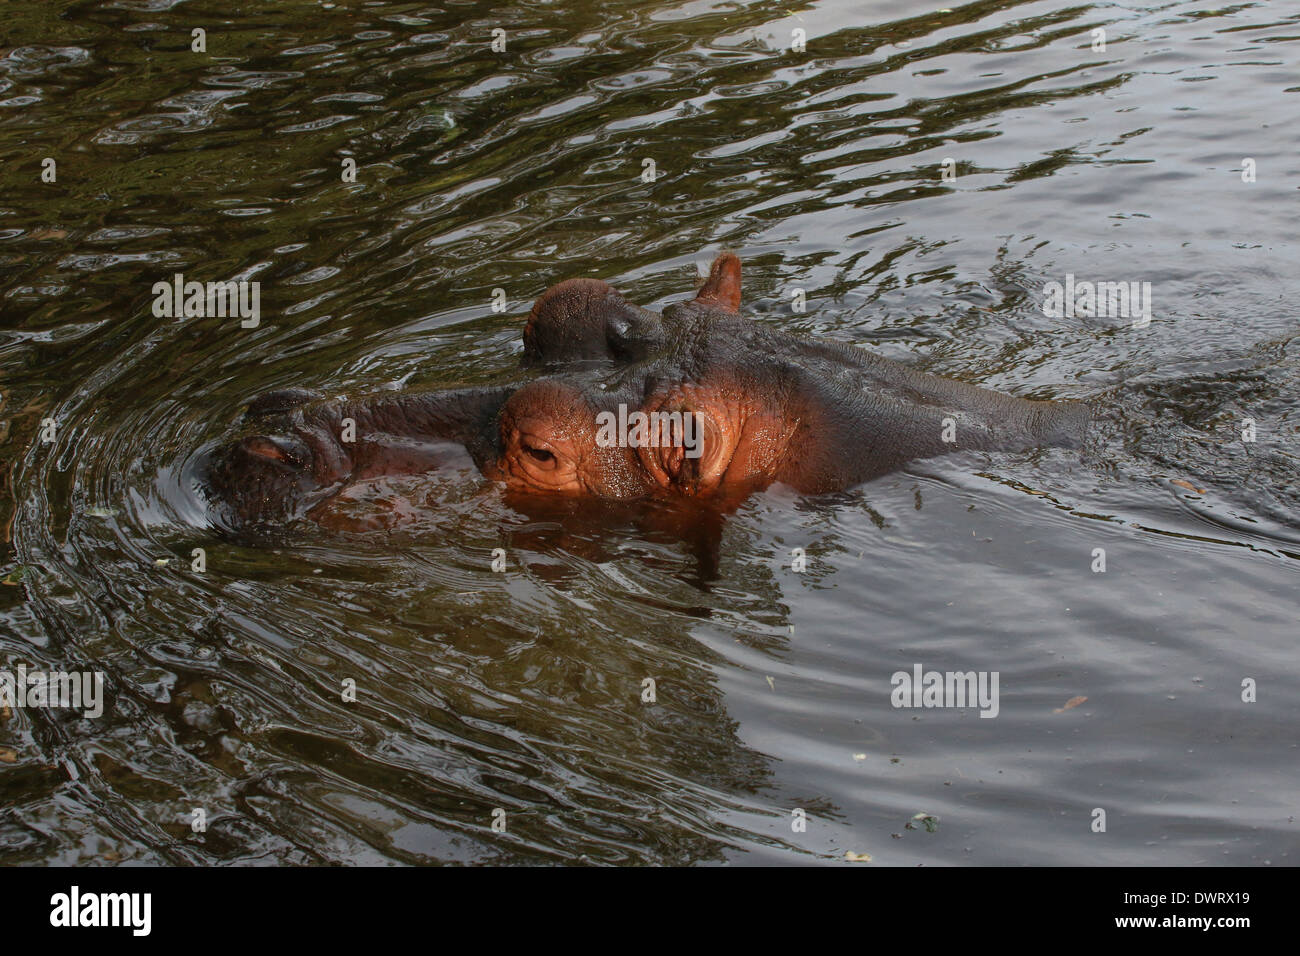 Ippona (Hippopotamus amphibius) close-up Foto Stock